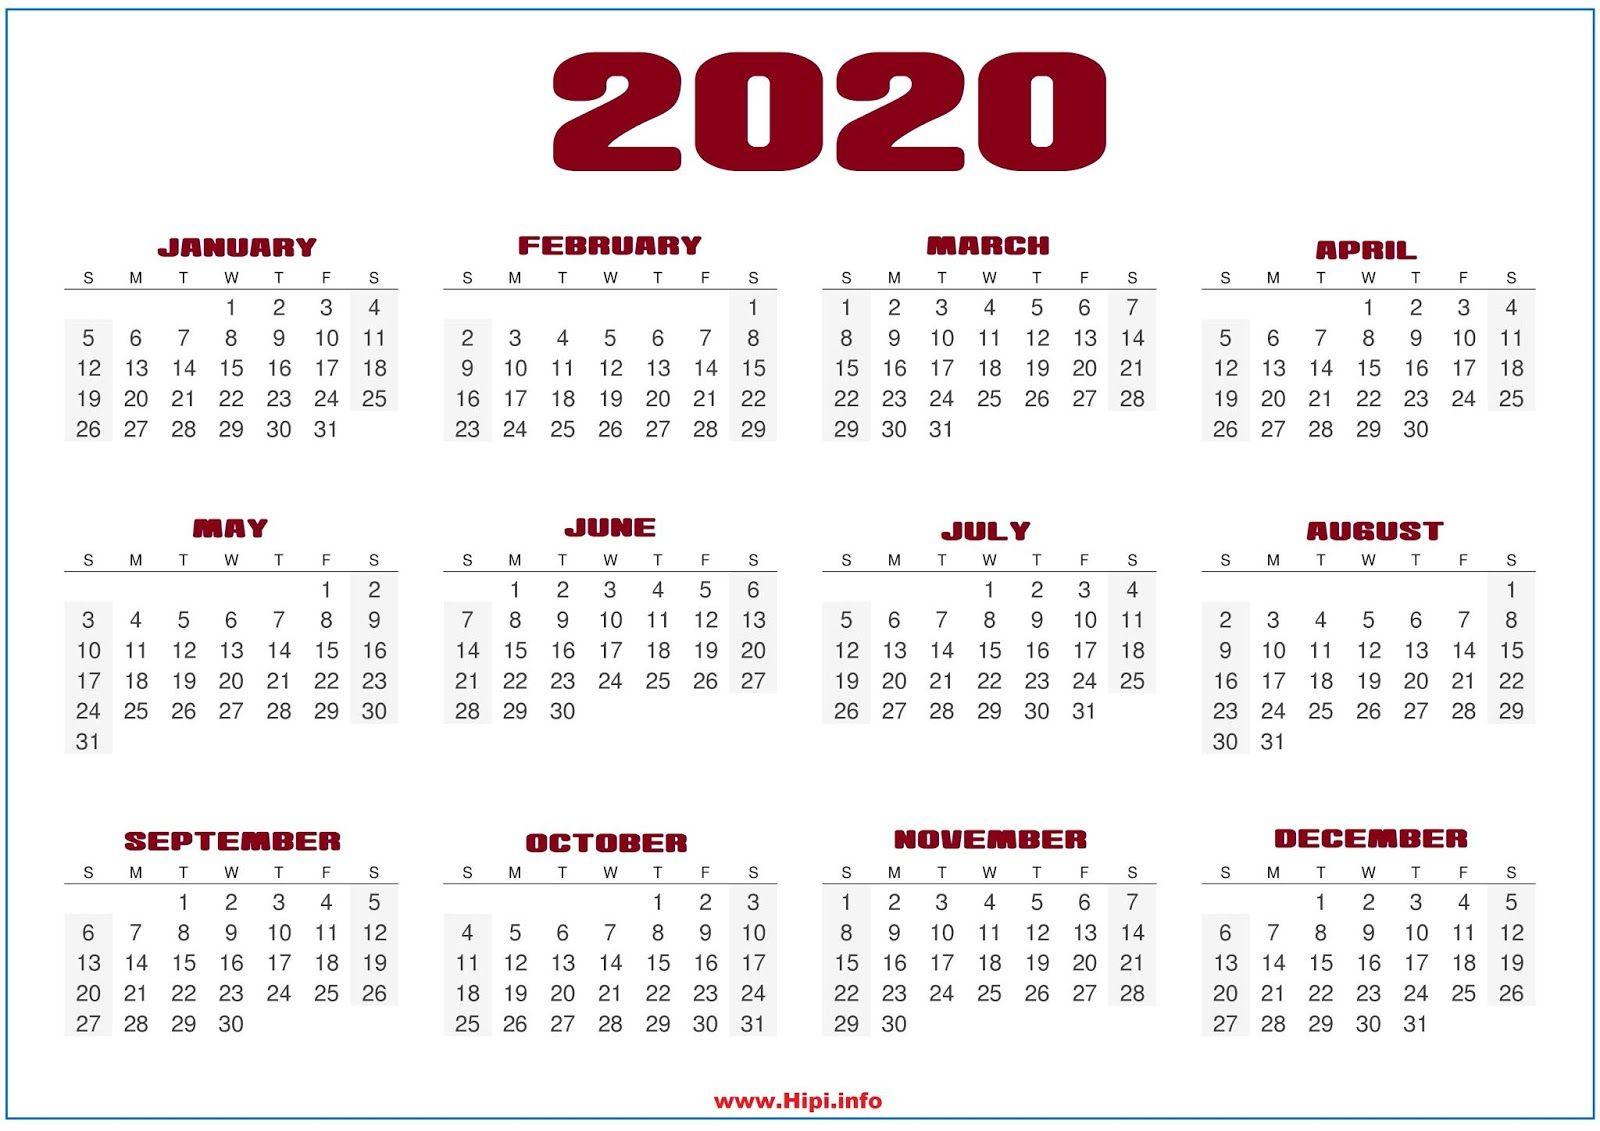 October 2020 Calendar Wallpaper Free October 2020